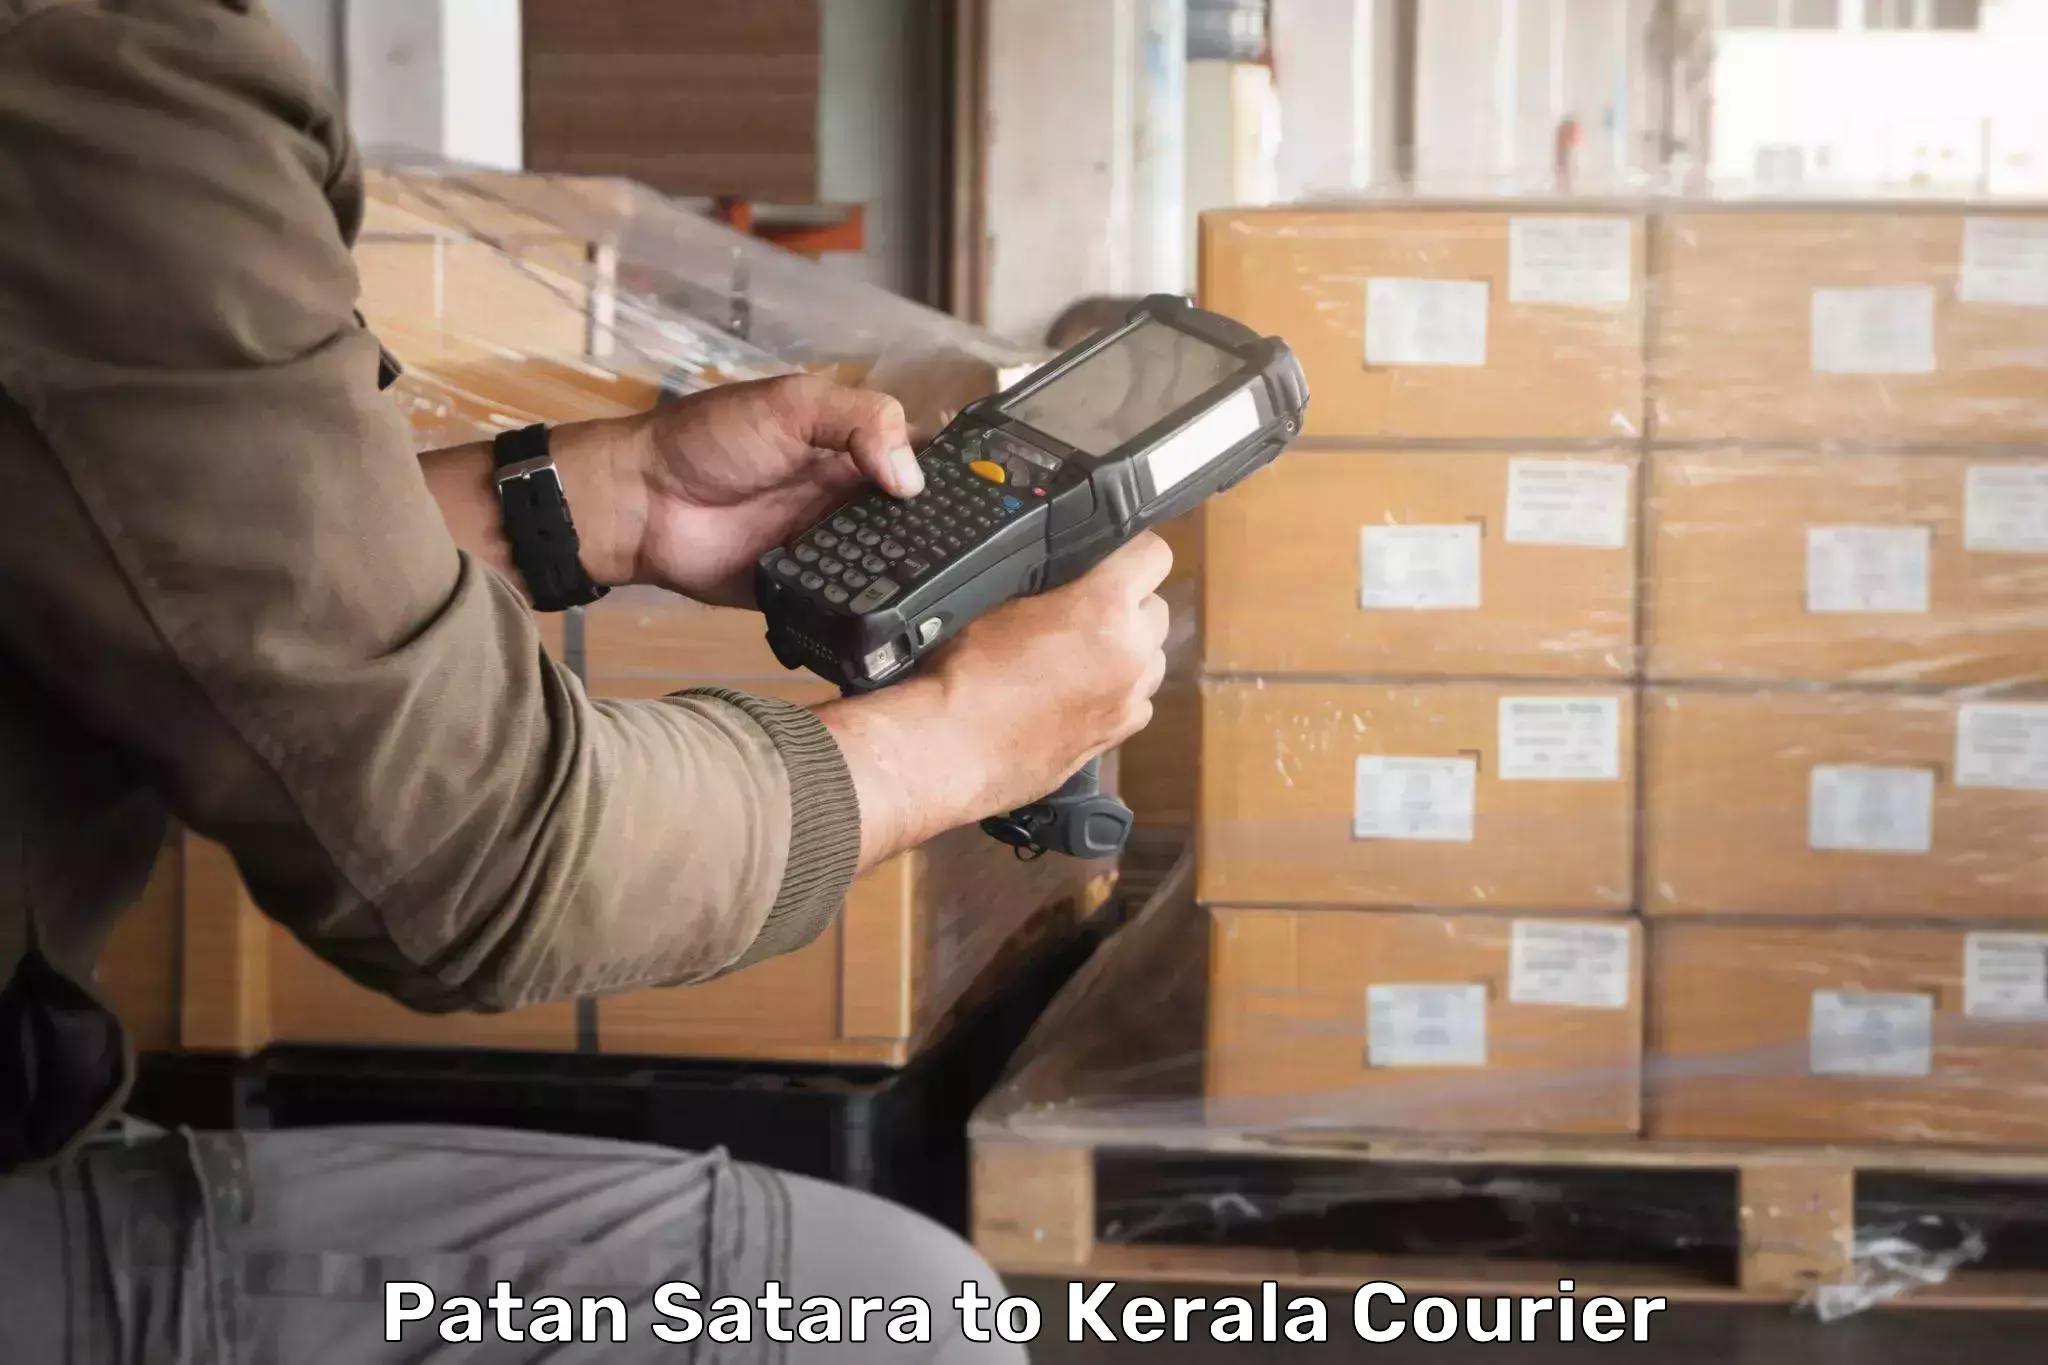 Expedited shipping solutions Patan Satara to Kannur